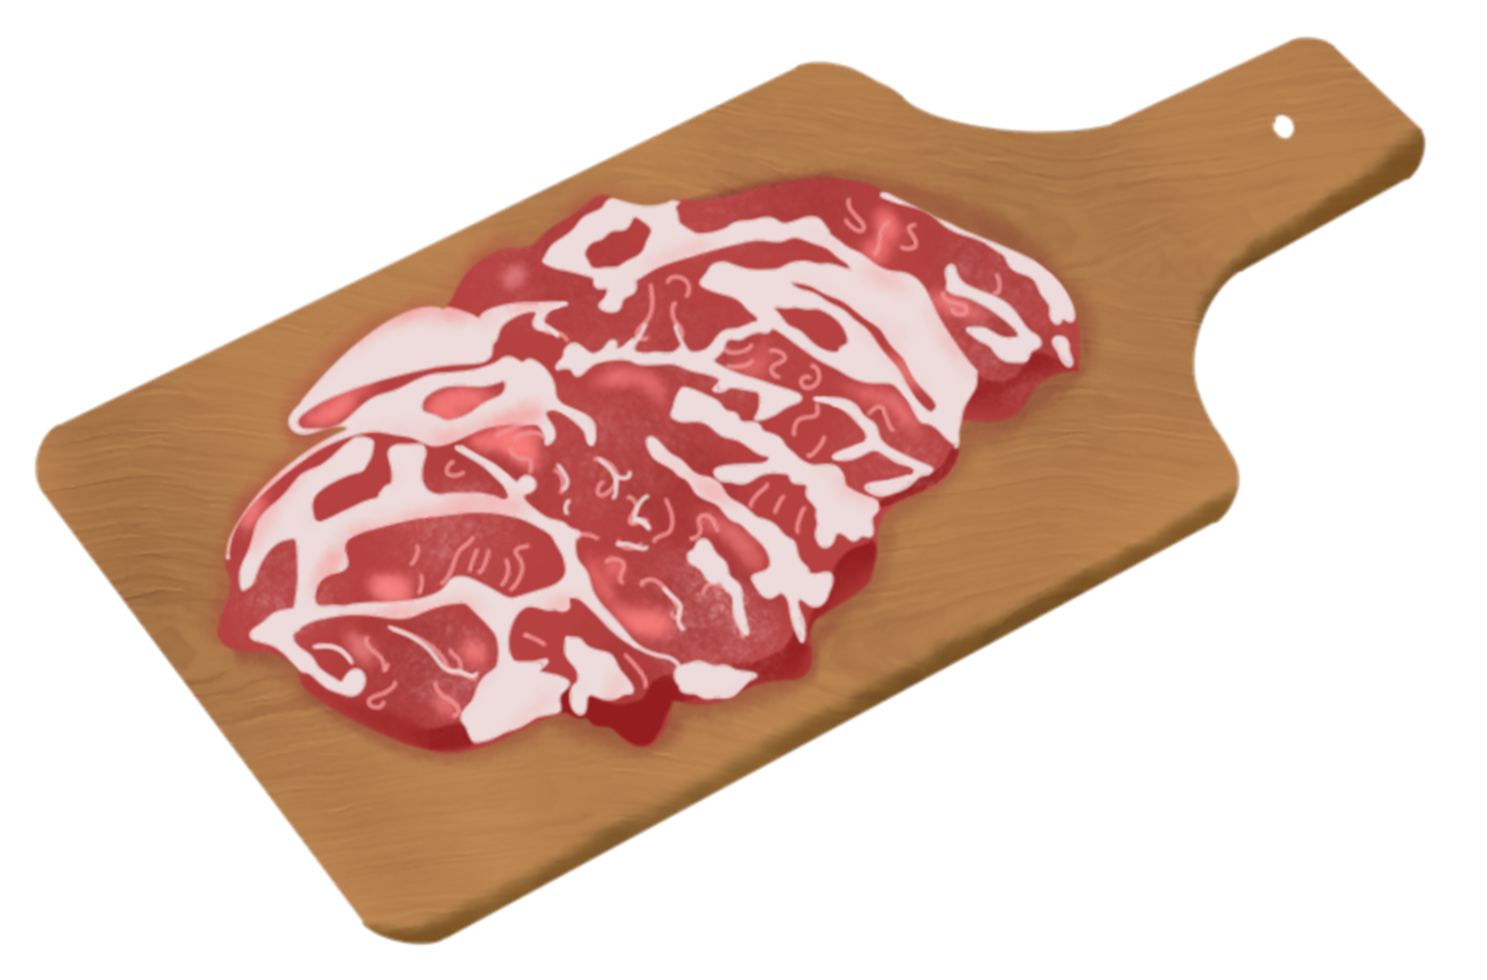 pork belly illustration png